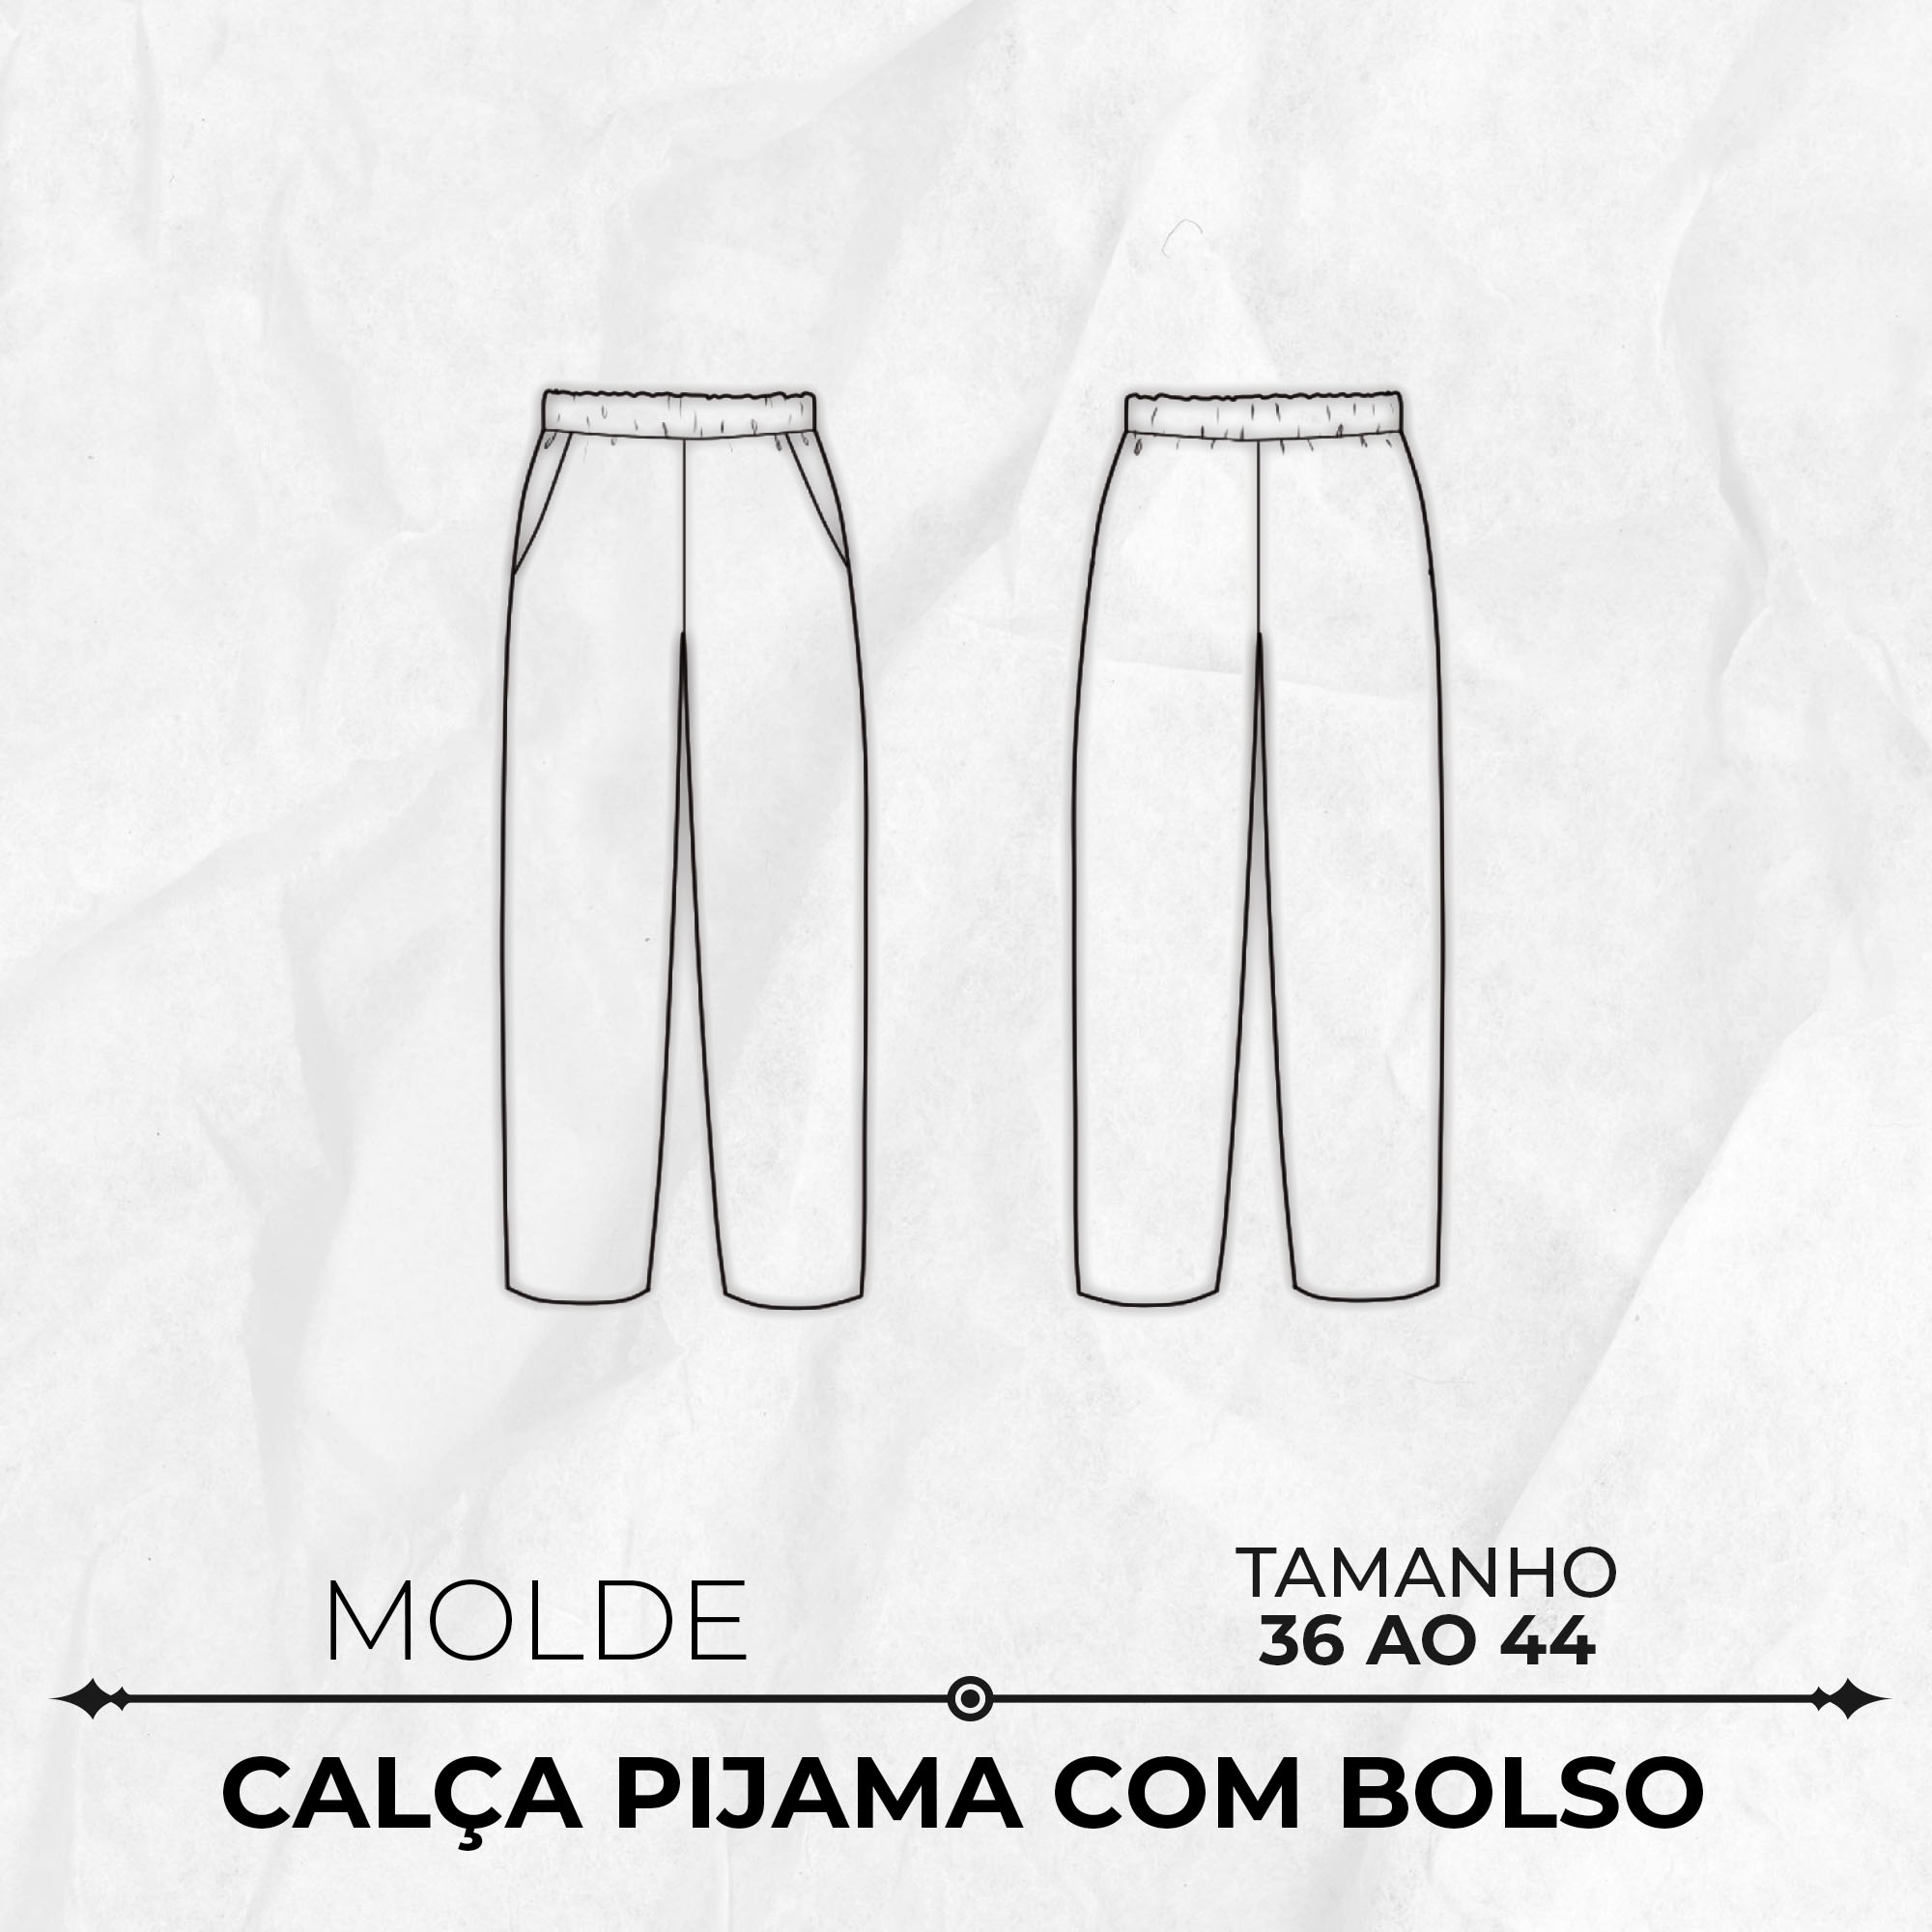 Molde calça pantalona pijama com bolso tamanho 36 ao 44 by  Wania Machado